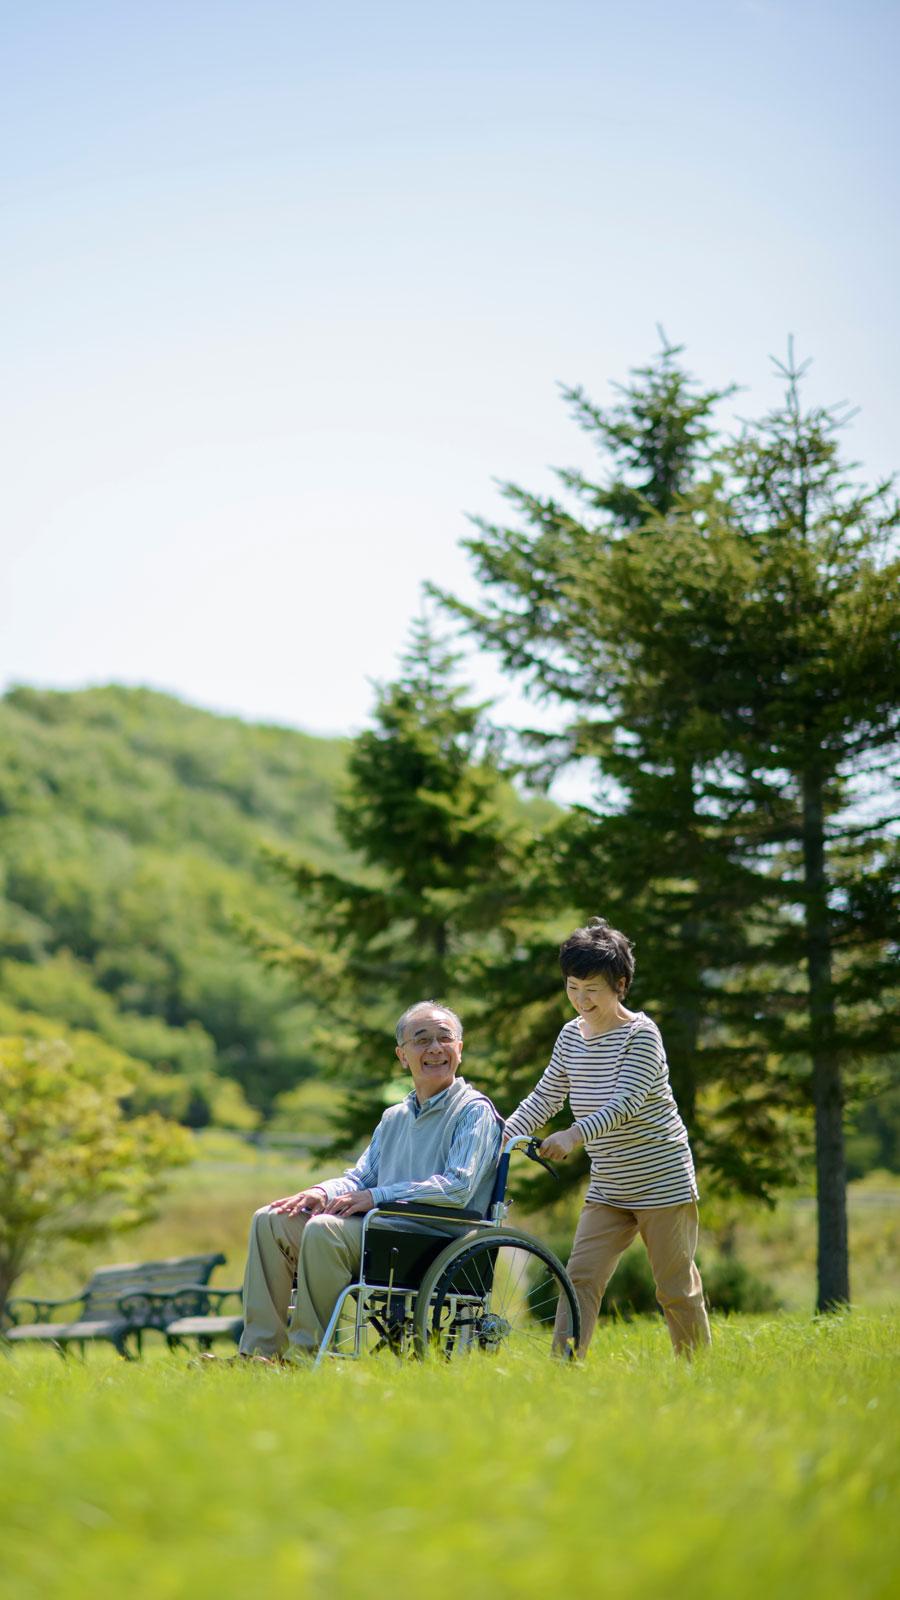 晴天の草原で車椅子に乗った高齢者を介護する様子の写真